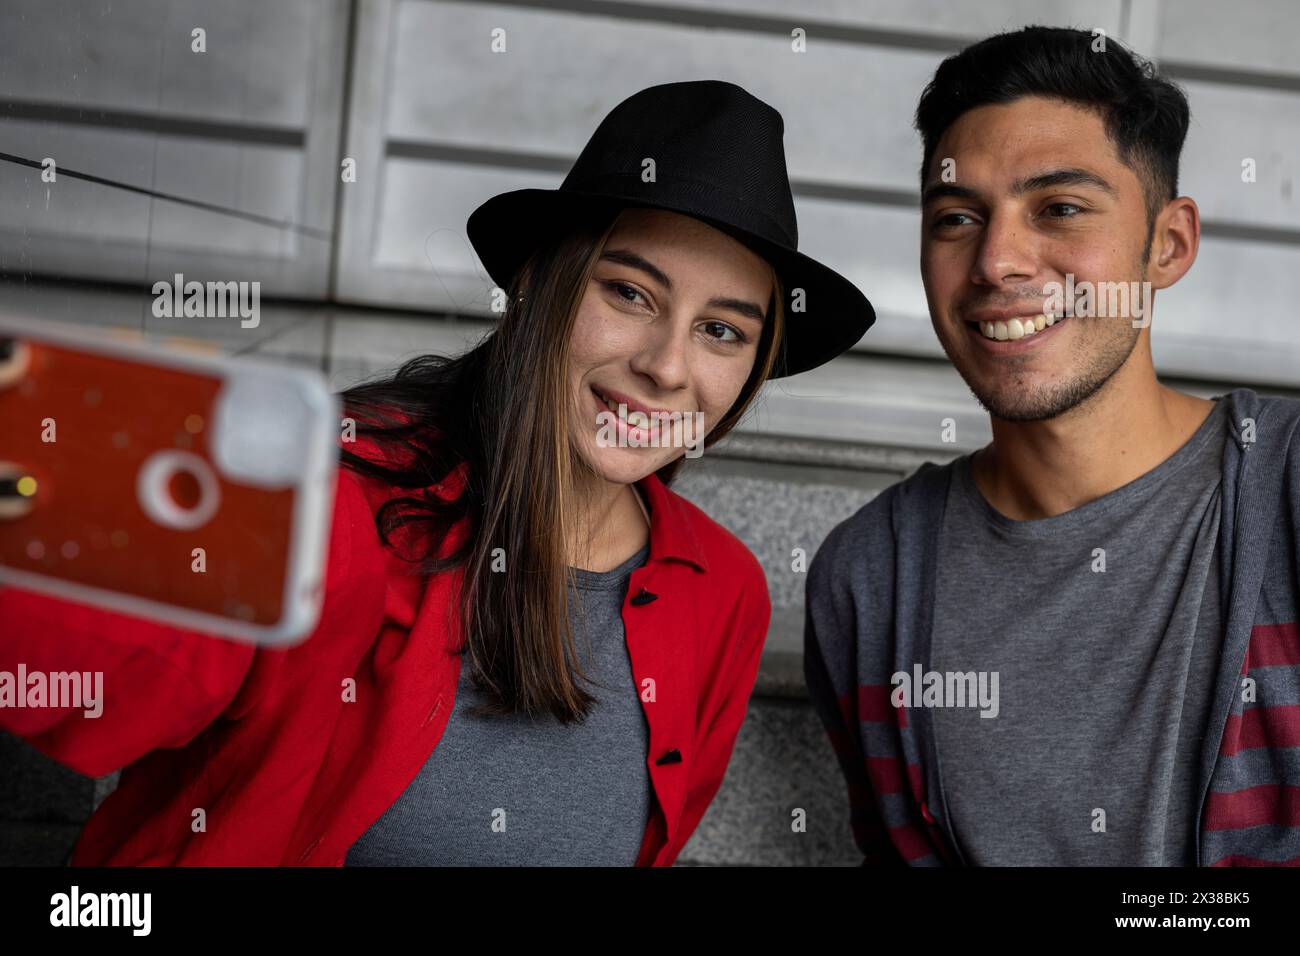 Deux jeunes frères latino-américains partagent avec joie un peu de temps ensemble en prenant un autoportrait de famille. Concept technologique. Banque D'Images